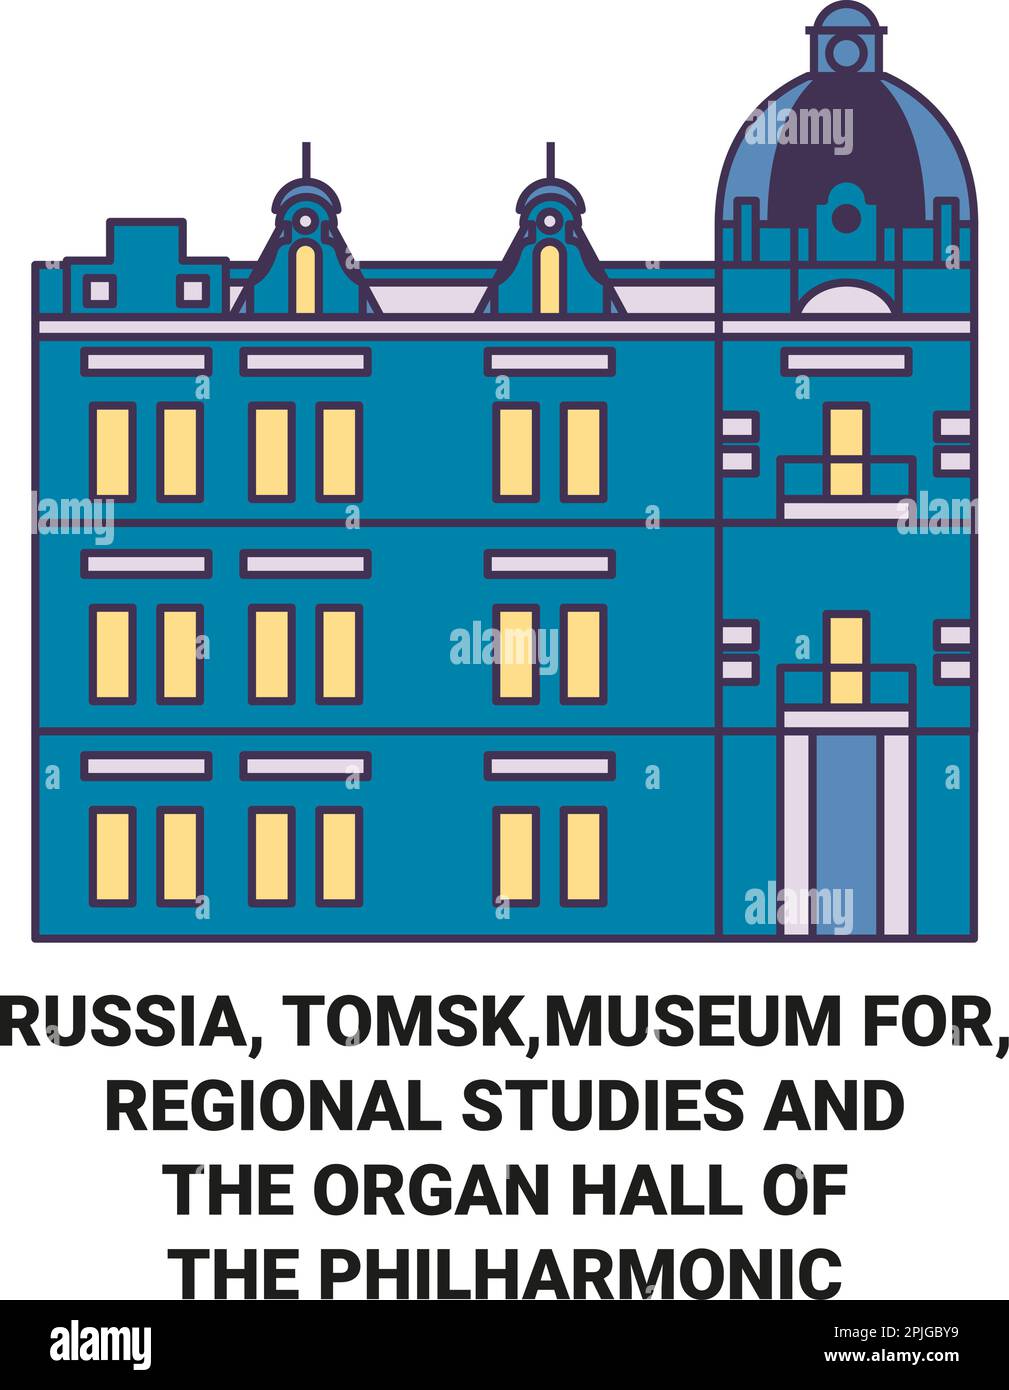 Russland, Tomsk, Museum für regionale Studien und die Orgelhalle der Philharmonie Reise Landmarke Illustration Stock Vektor